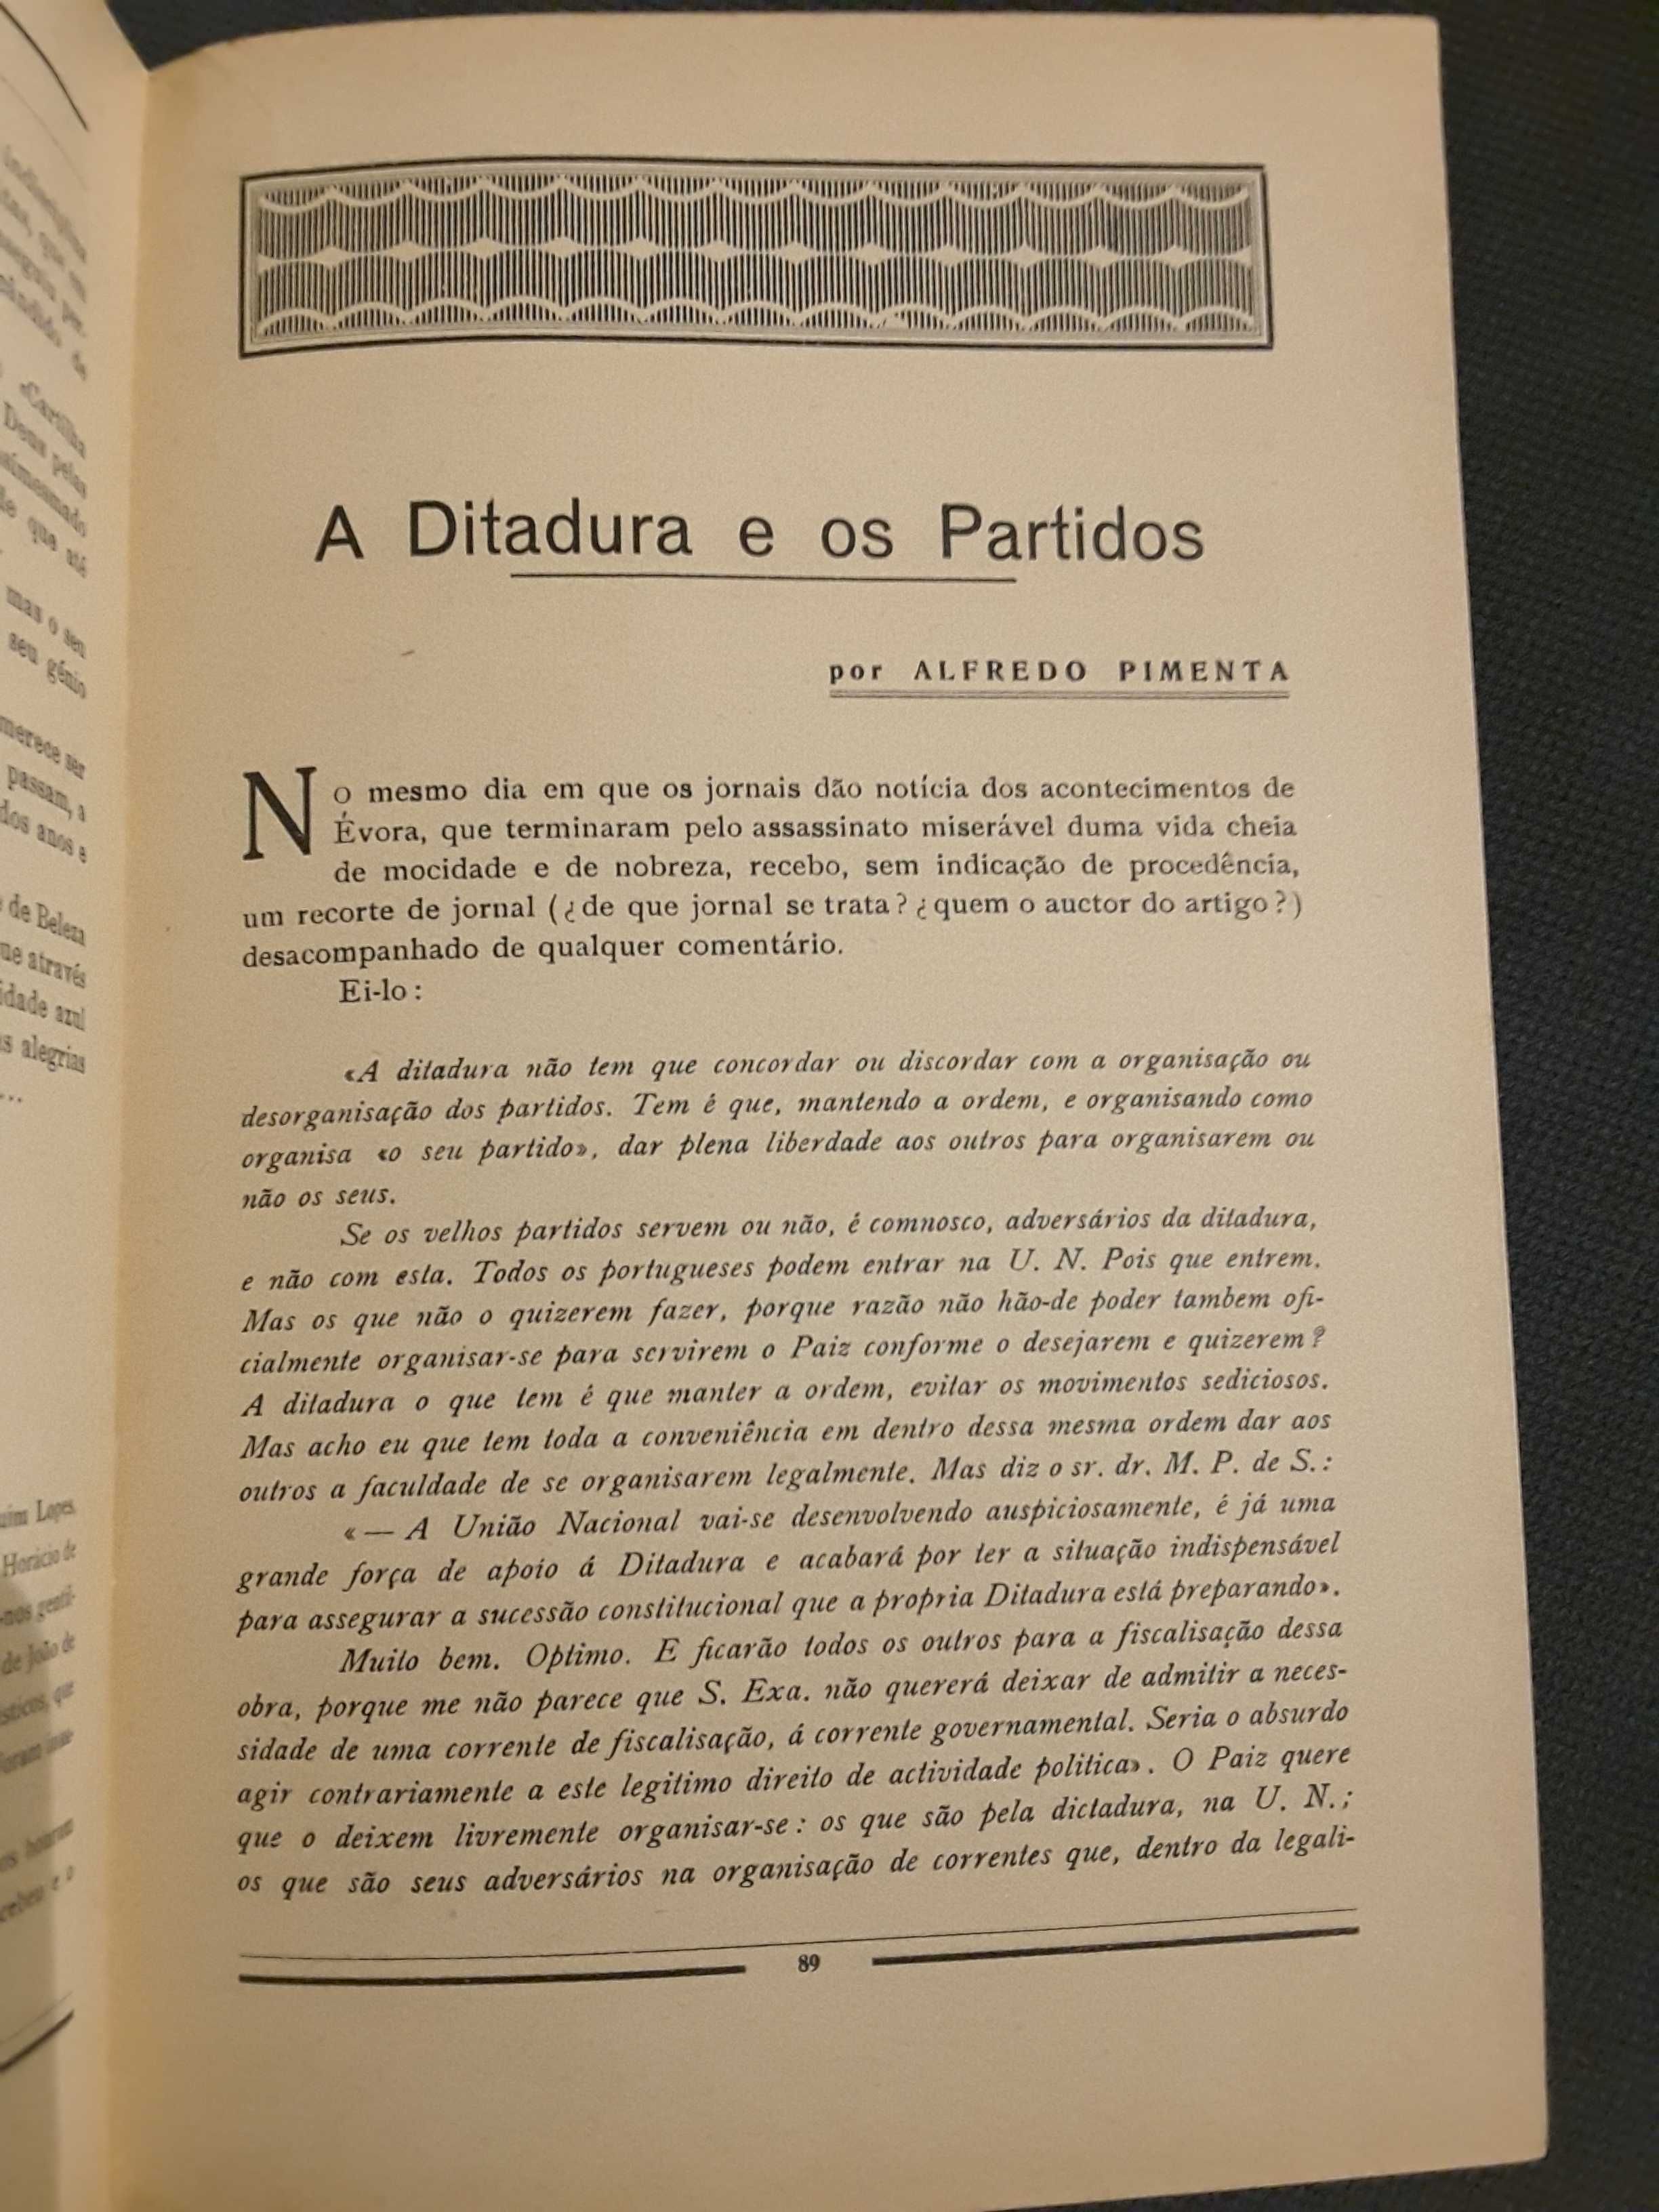 Gil Vicente, Revista Literária de Cultura Nacionalista